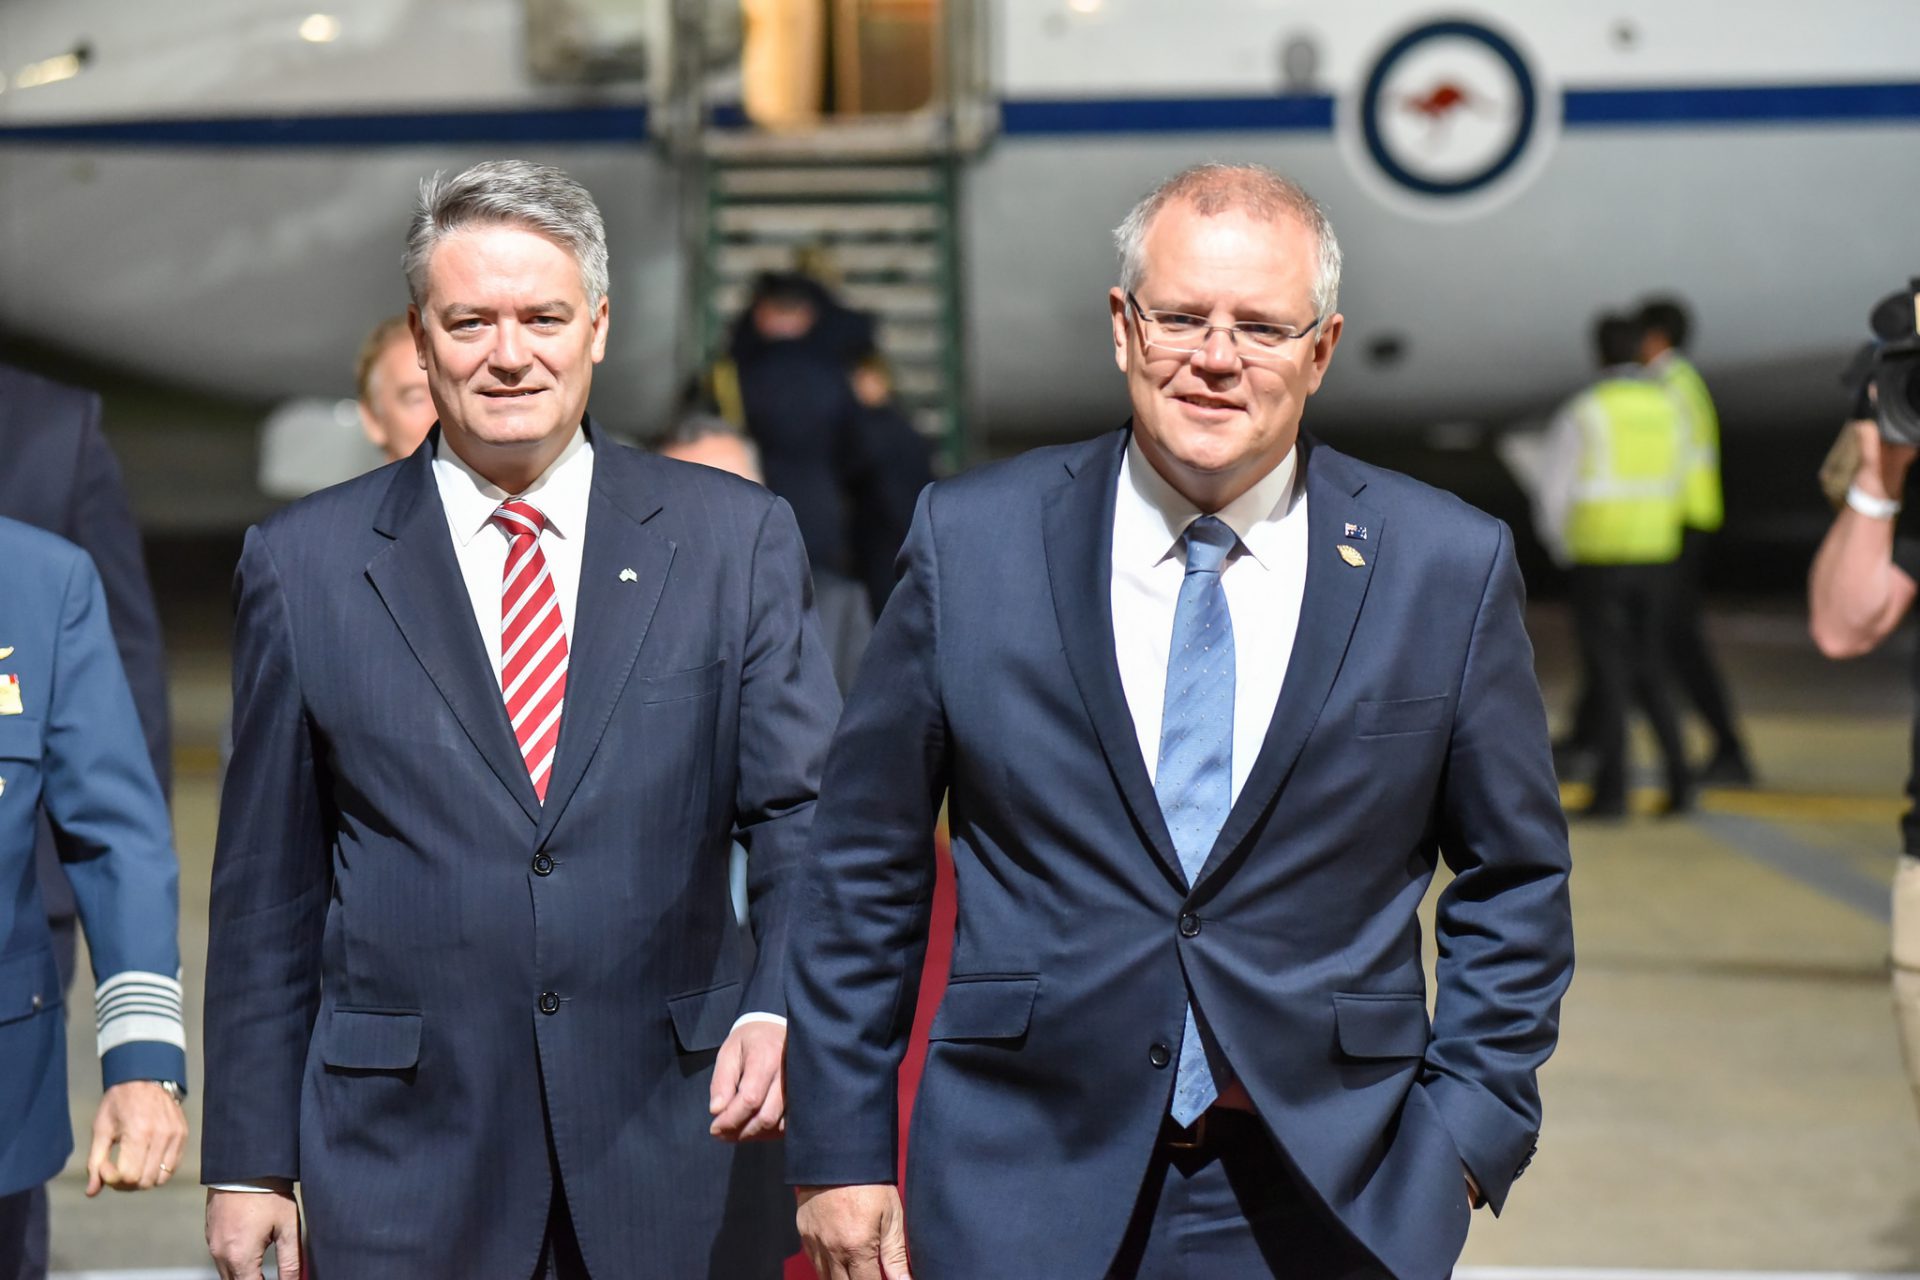 Arrival of Scott Morrison, Prime Minister of Australia